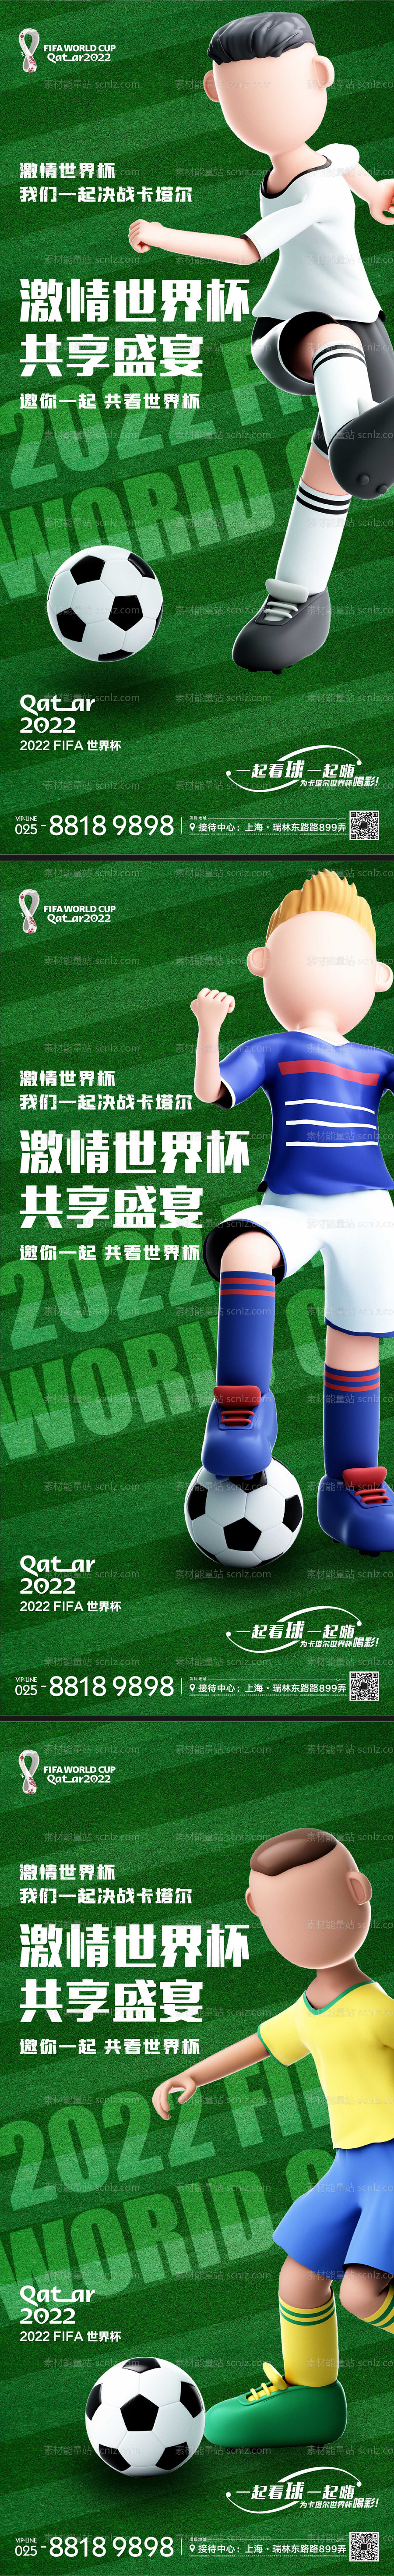 素材能量站-世界杯系列海报